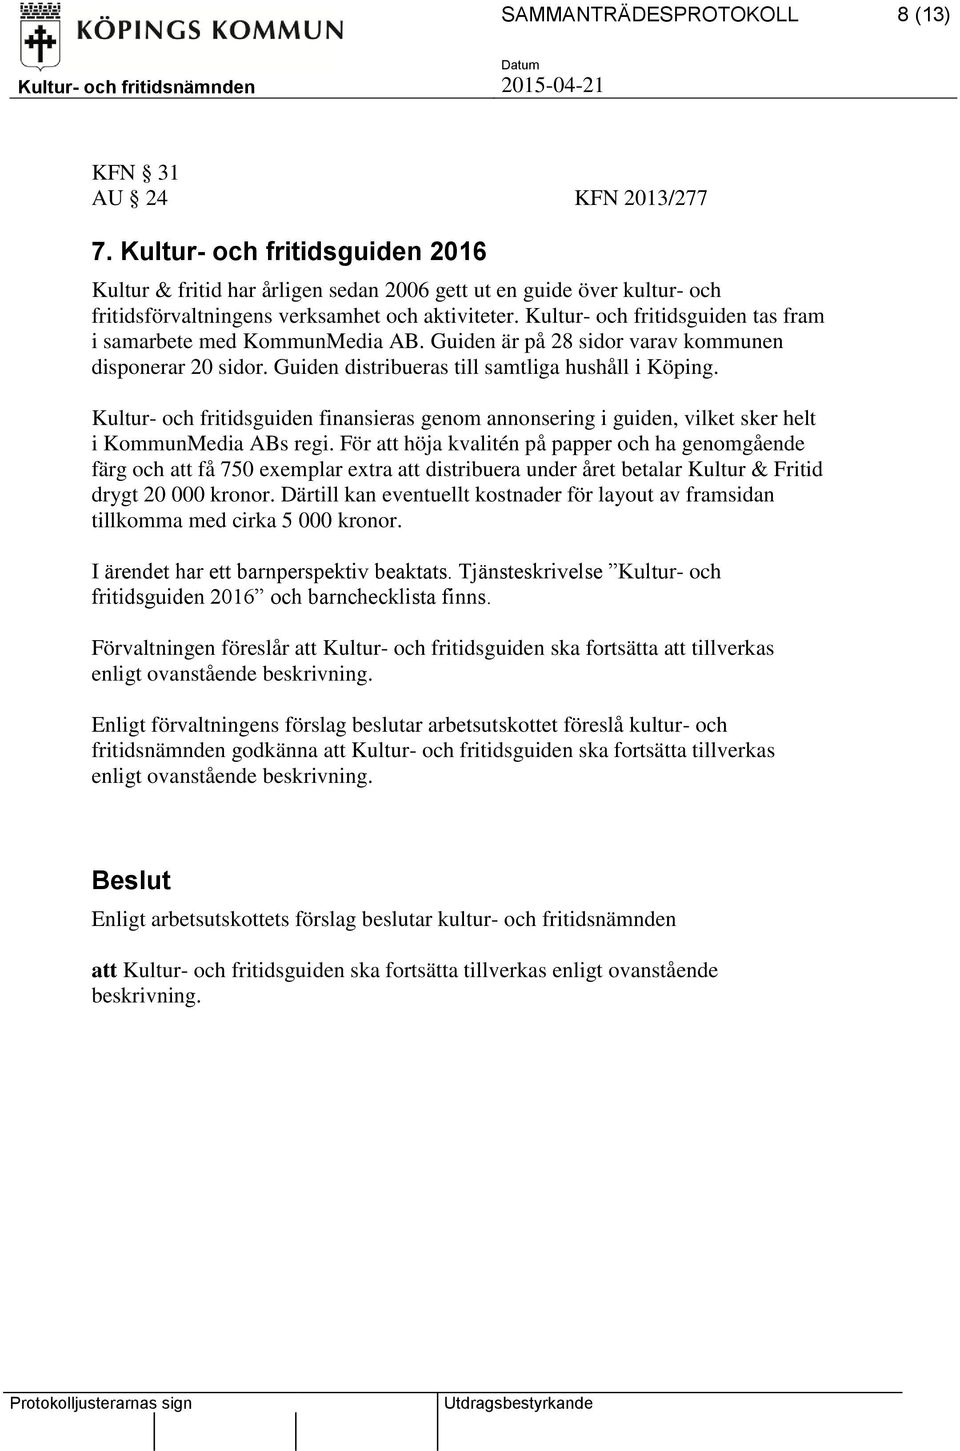 Kultur- och fritidsguiden tas fram i samarbete med KommunMedia AB. Guiden är på 28 sidor varav kommunen disponerar 20 sidor. Guiden distribueras till samtliga hushåll i Köping.